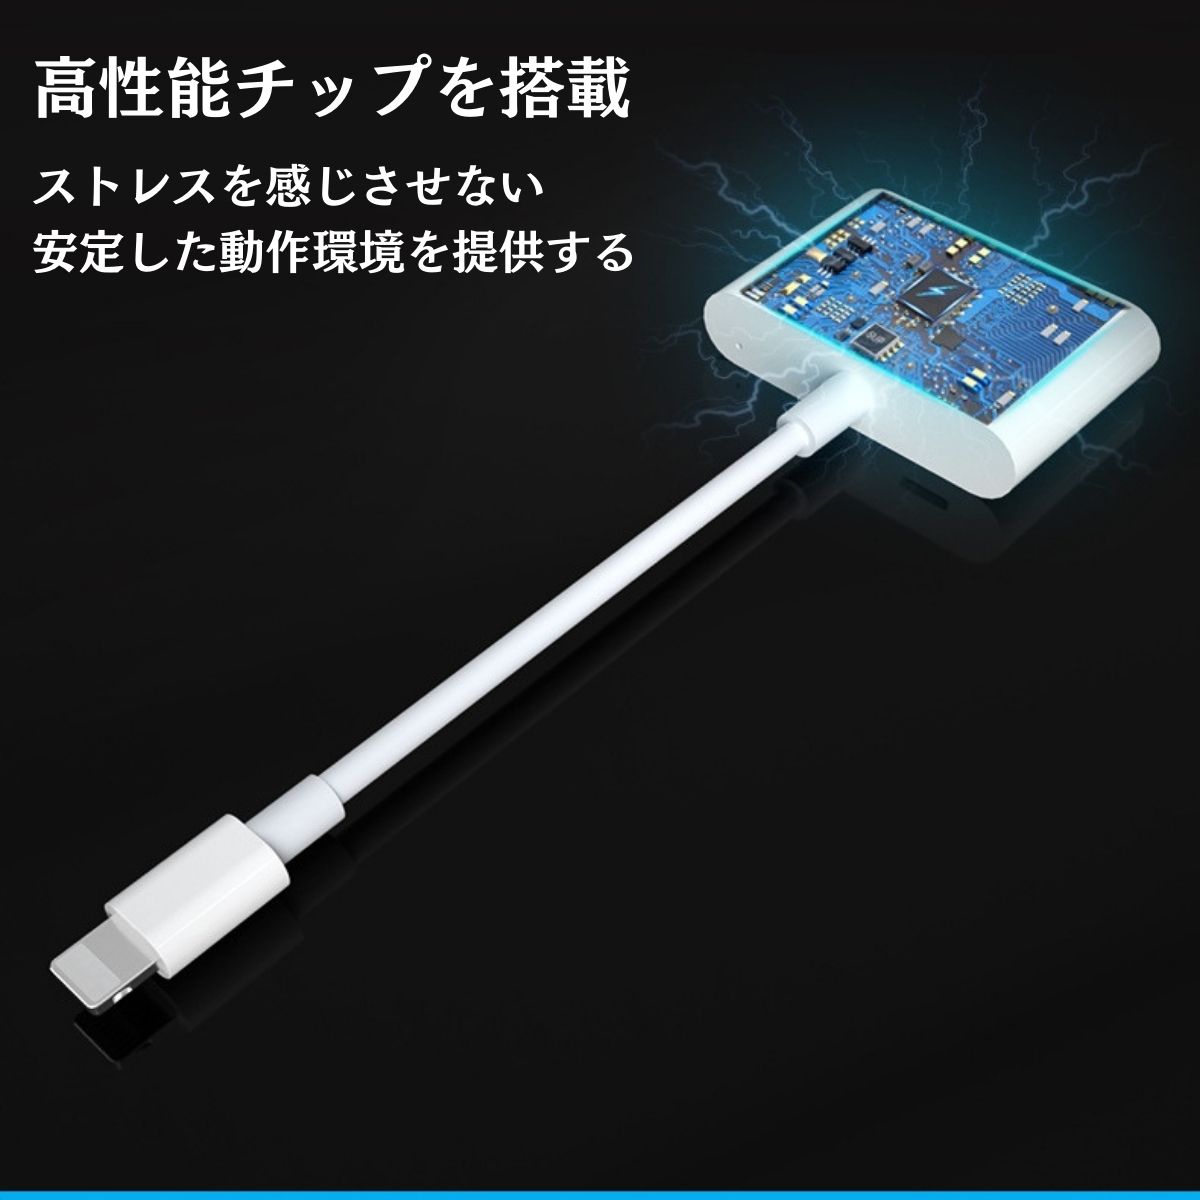 iPhone HDMI изменение адаптер изменение кабель usb подсветка ipad Lightning изменение подача тока не необходимо iPhone телевизор подключение адаптор apple